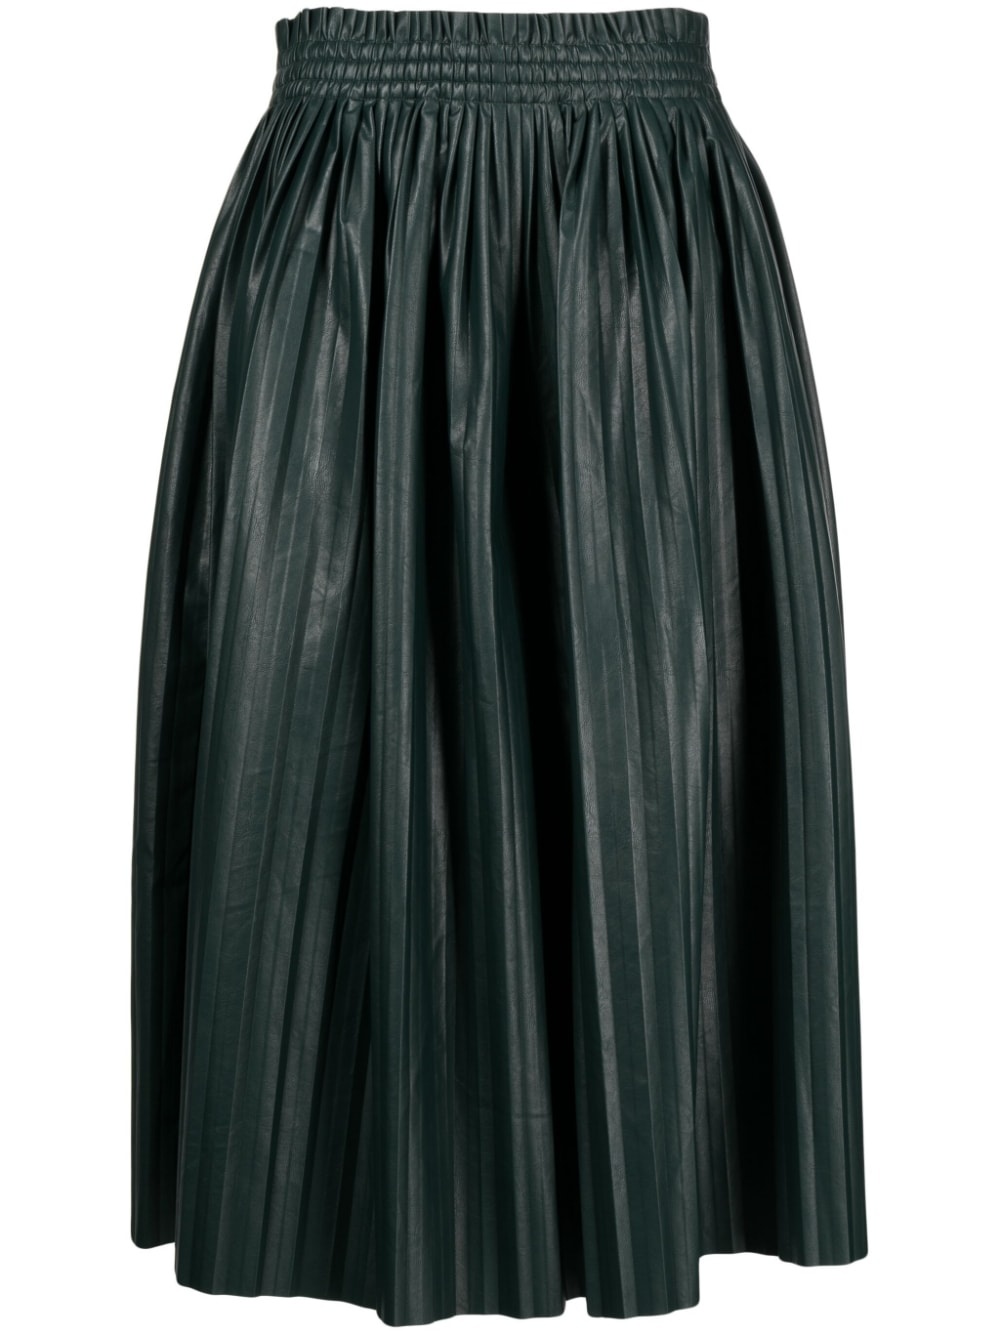 below-knee pleated skirt - 1